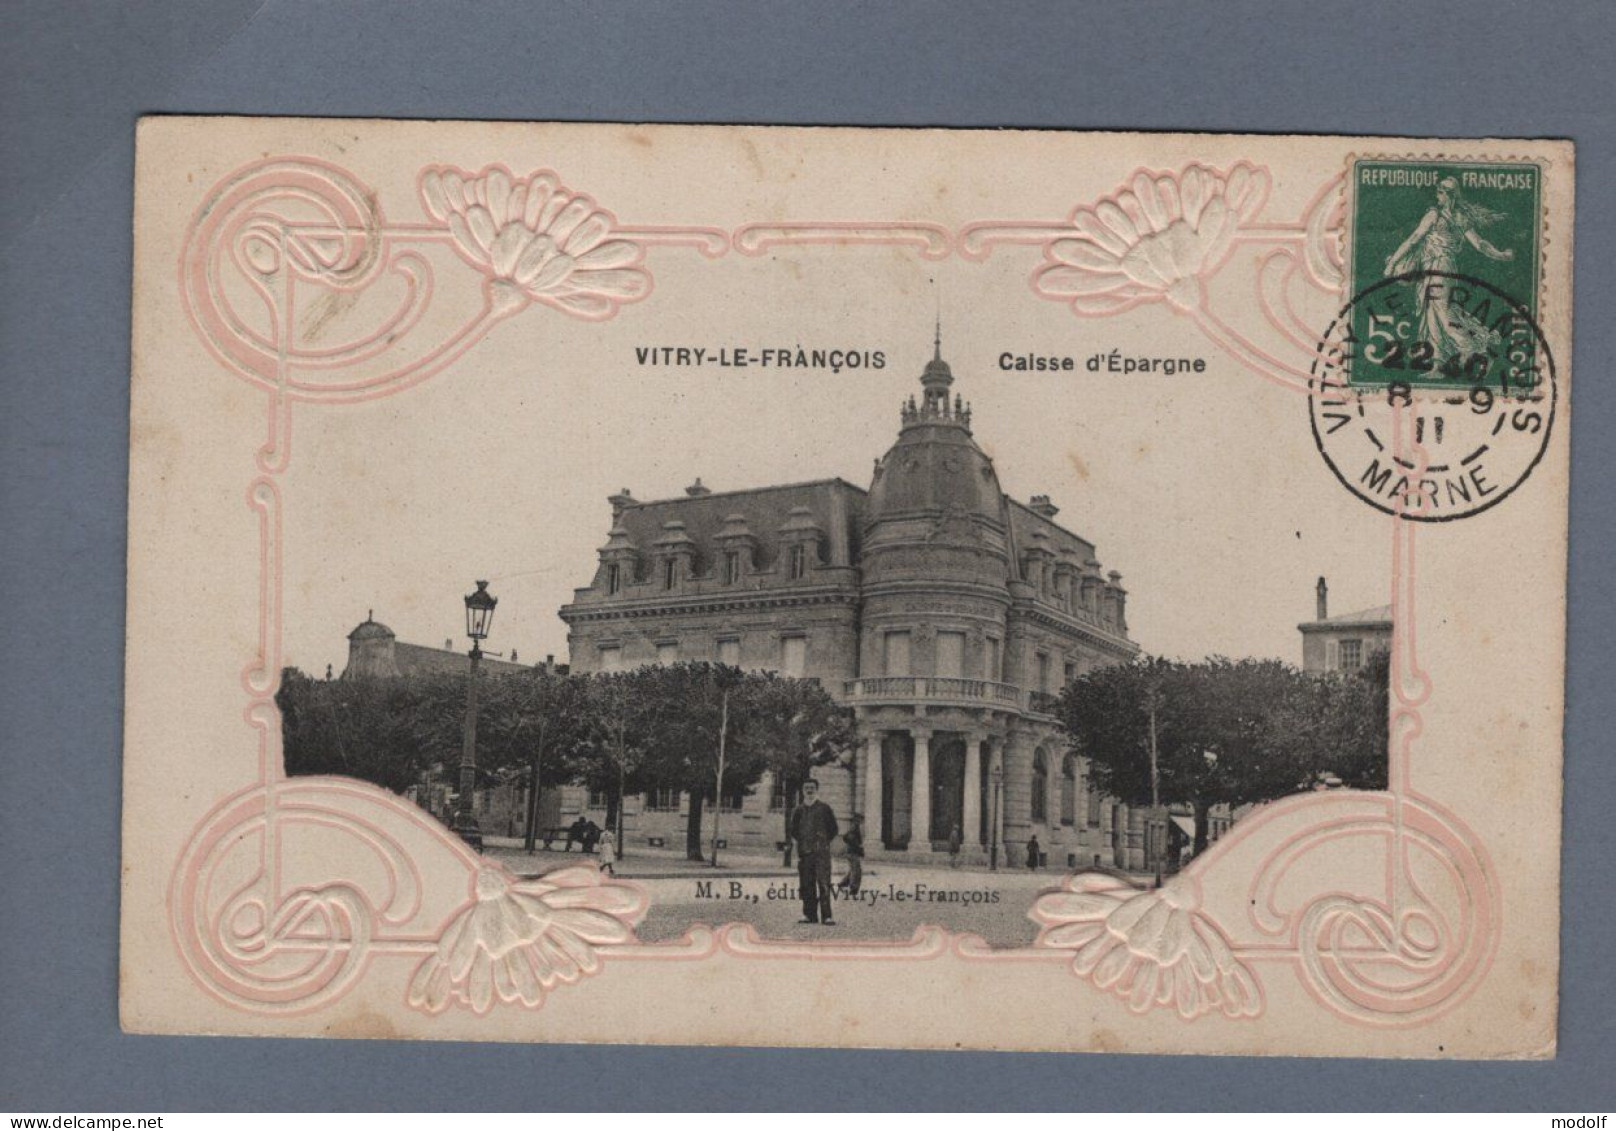 CPA - 51 - Vitry-le-François - Caisse D'Epargne - Animée - Décor Floral En Relief - Circulée En 1911 - Vitry-le-François